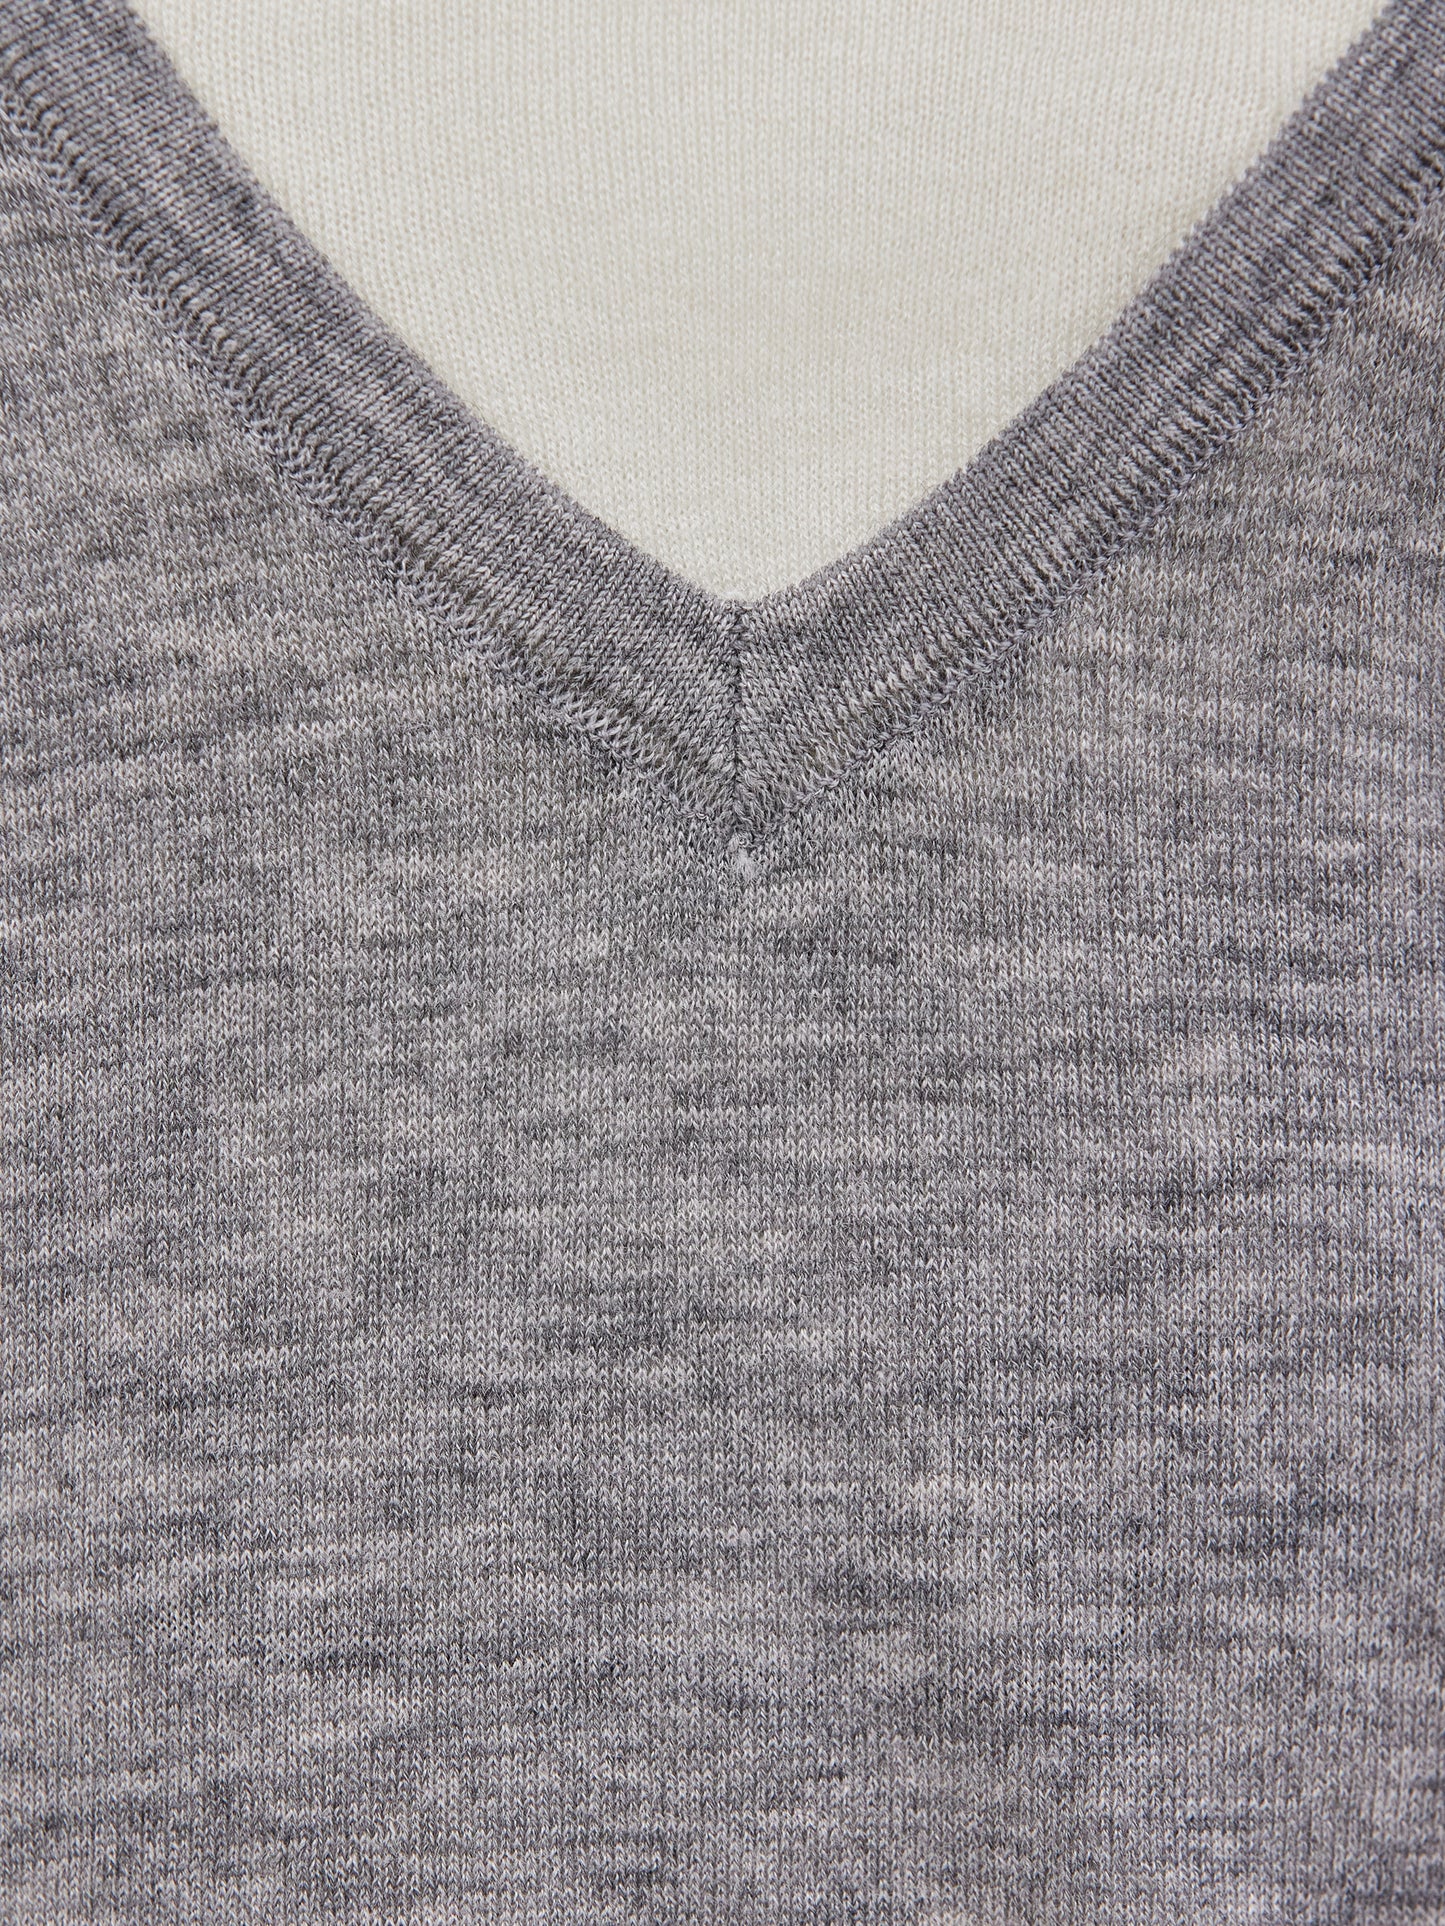 Layered Knit, Grey/Ivory